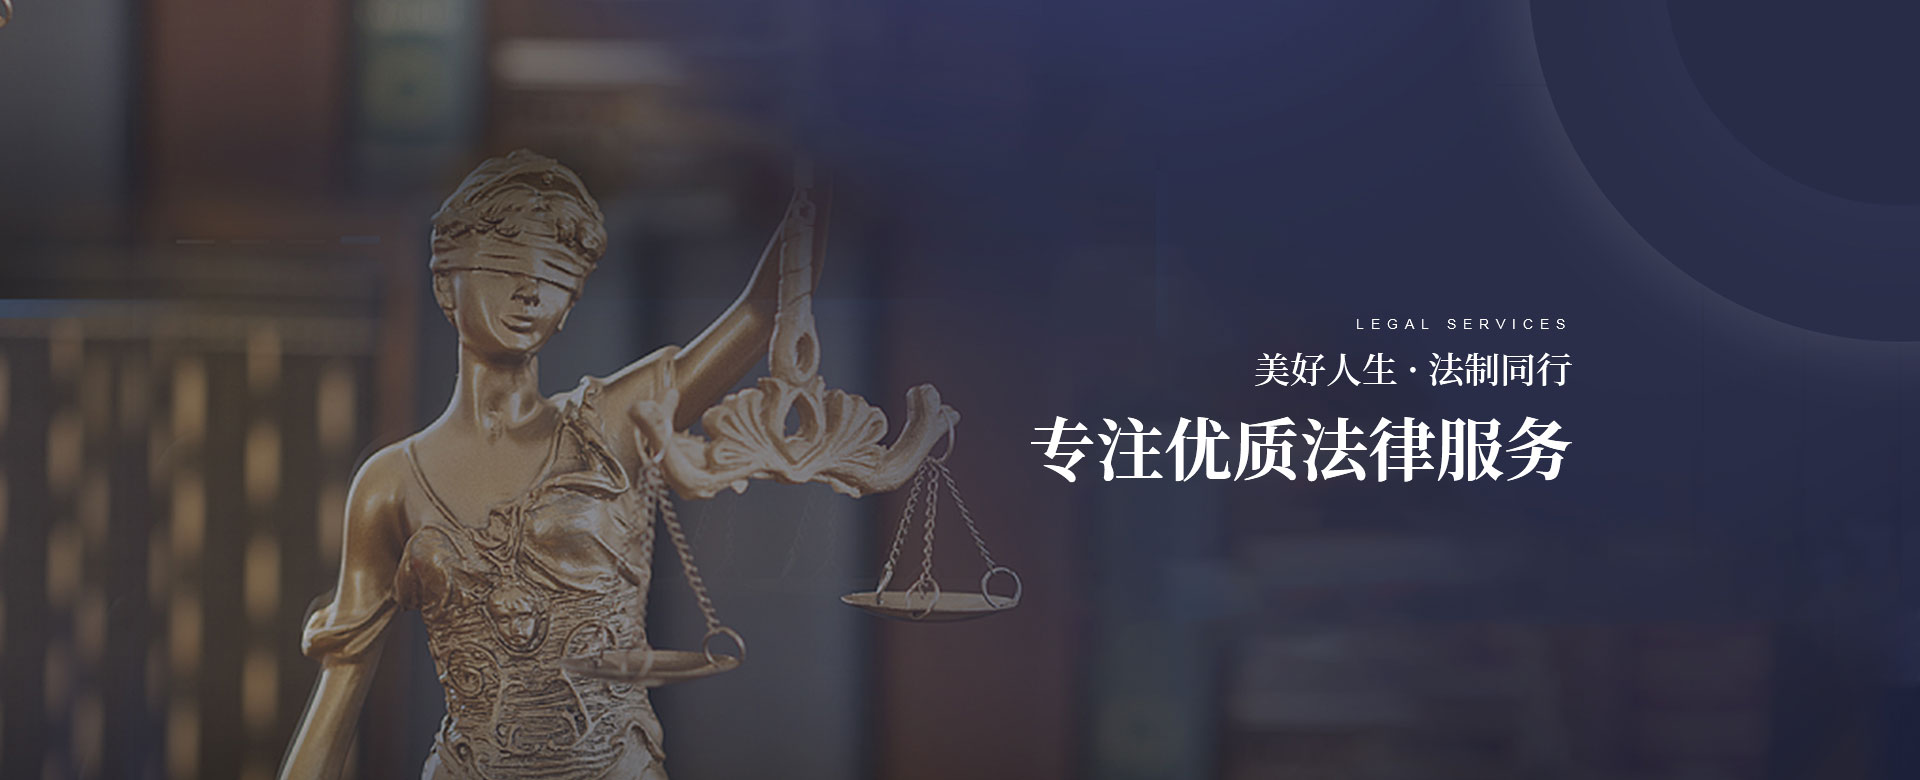 玩球平台(中国)有限公司，专注优质法律服务